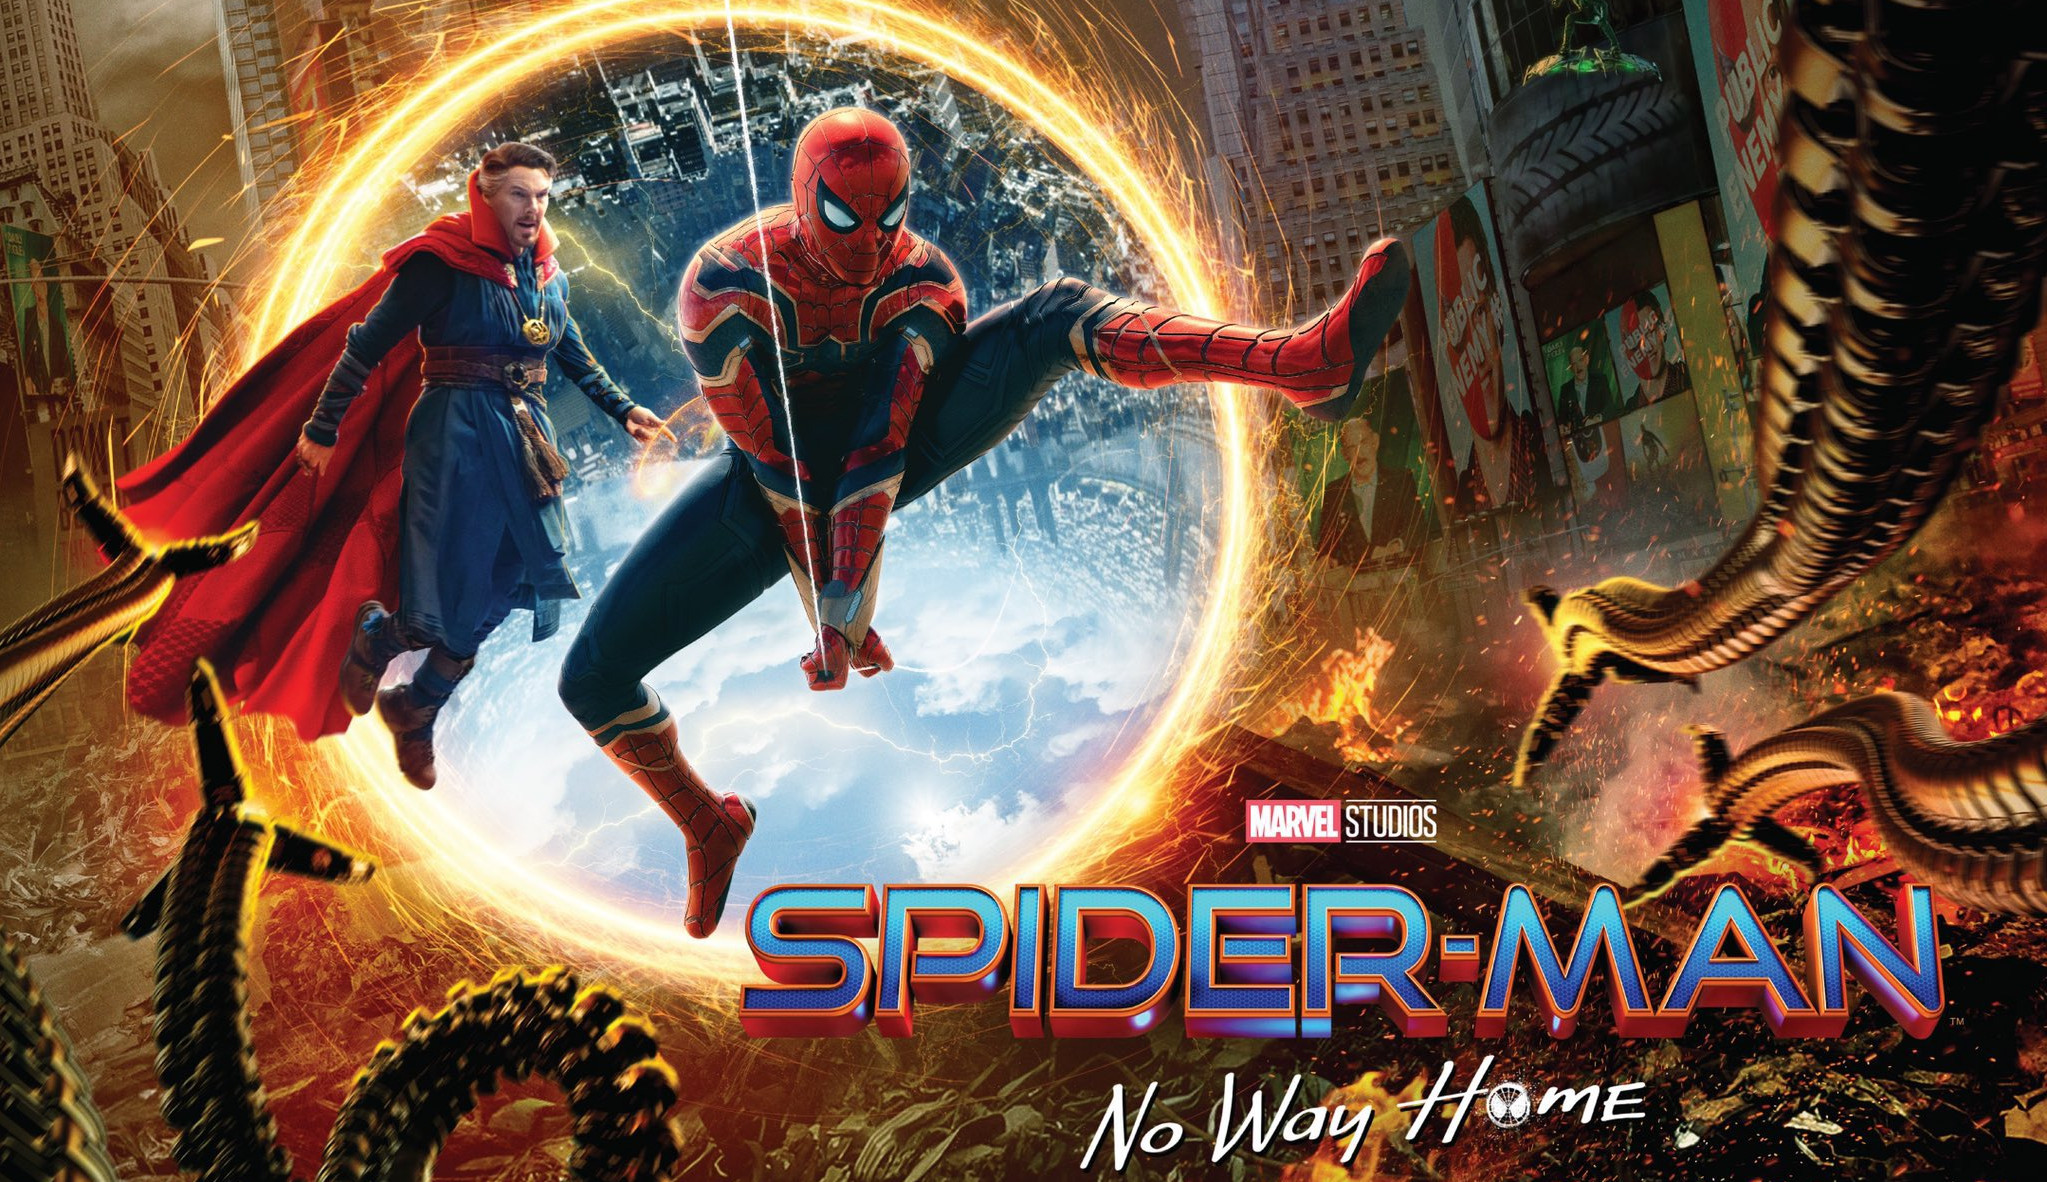 Crítica americana aprova o filme Homem Aranha 3, segundo o Rotten Tomatoes